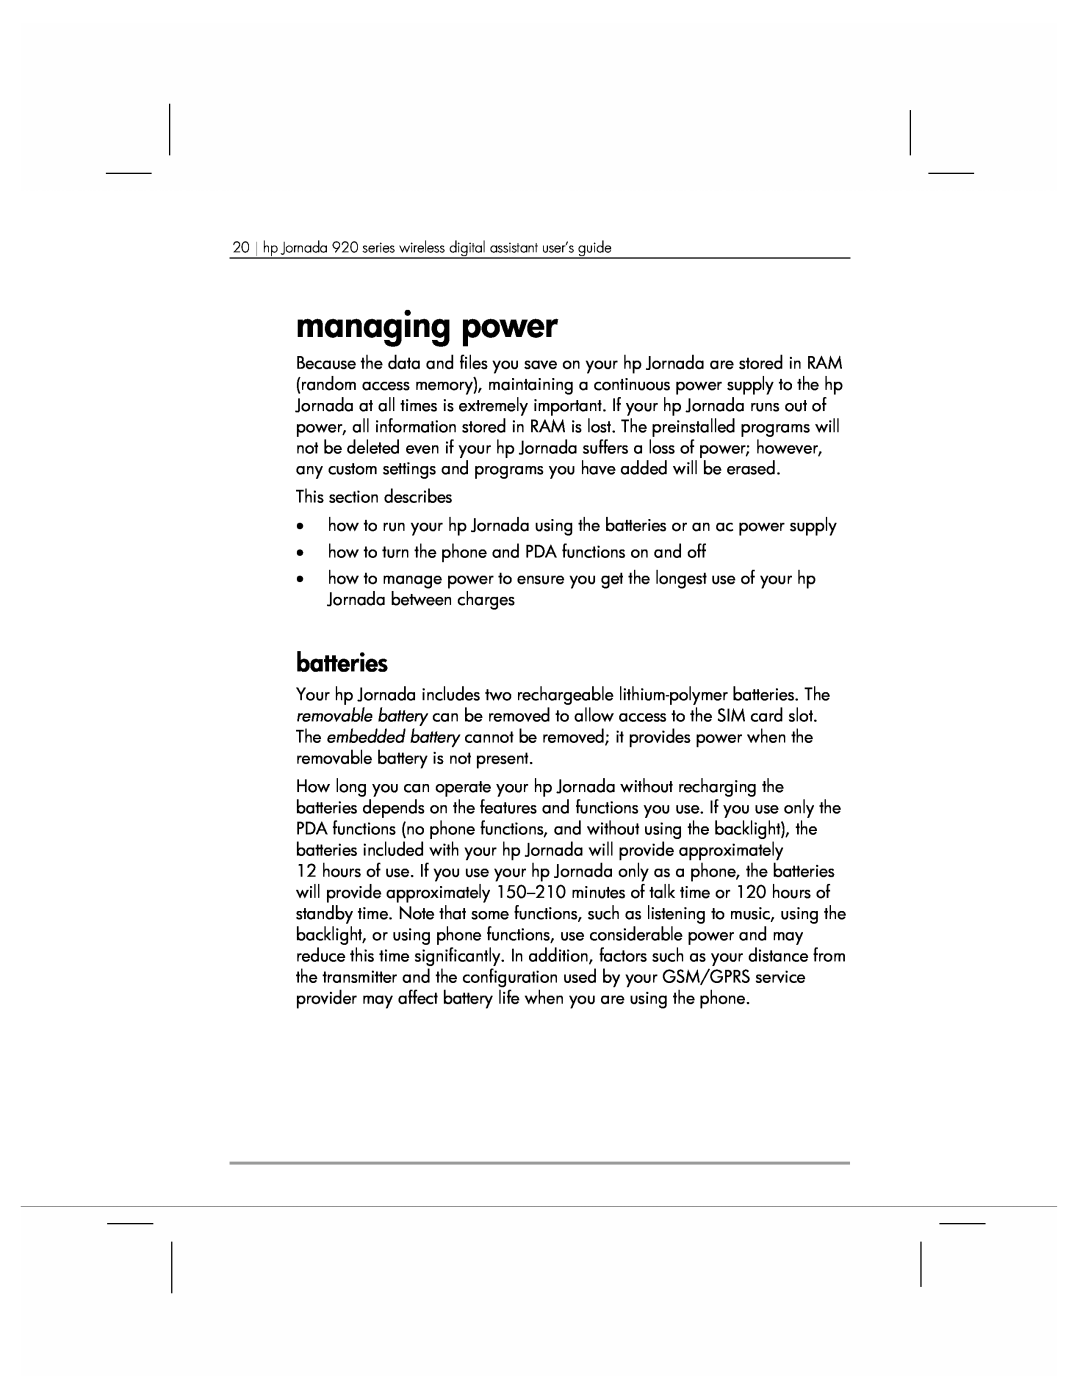 HP 920 manual managing power, batteries 